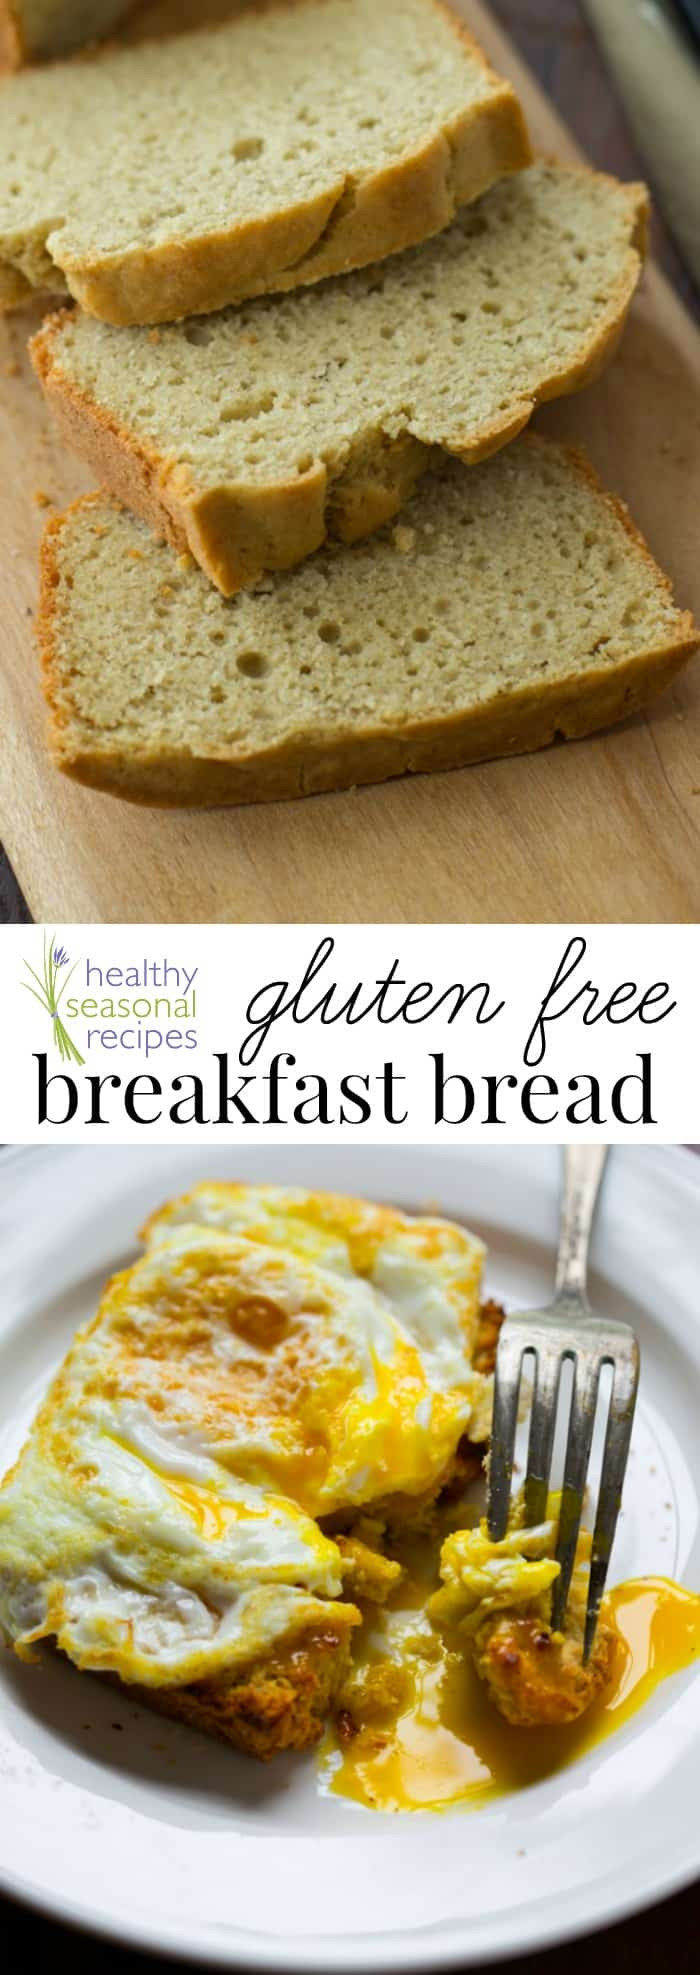 Healthy Gluten Free Breakfast
 gluten free breakfast bread Healthy Seasonal Recipes